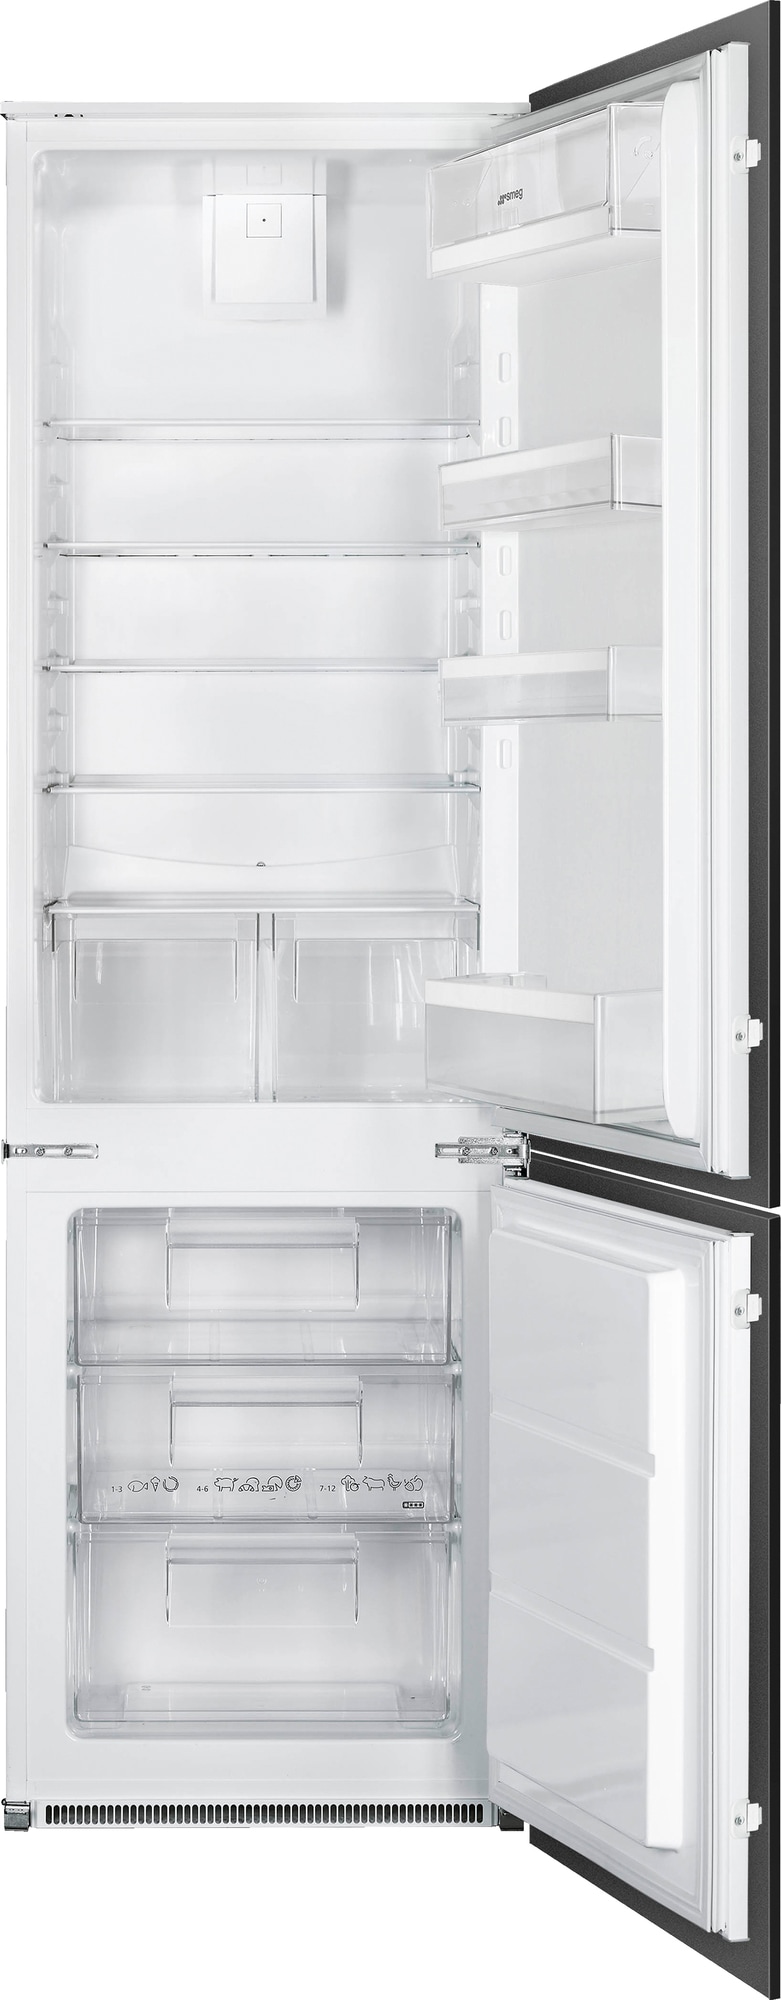 Billede af Smeg køleskab/fryser C41721F indbygget